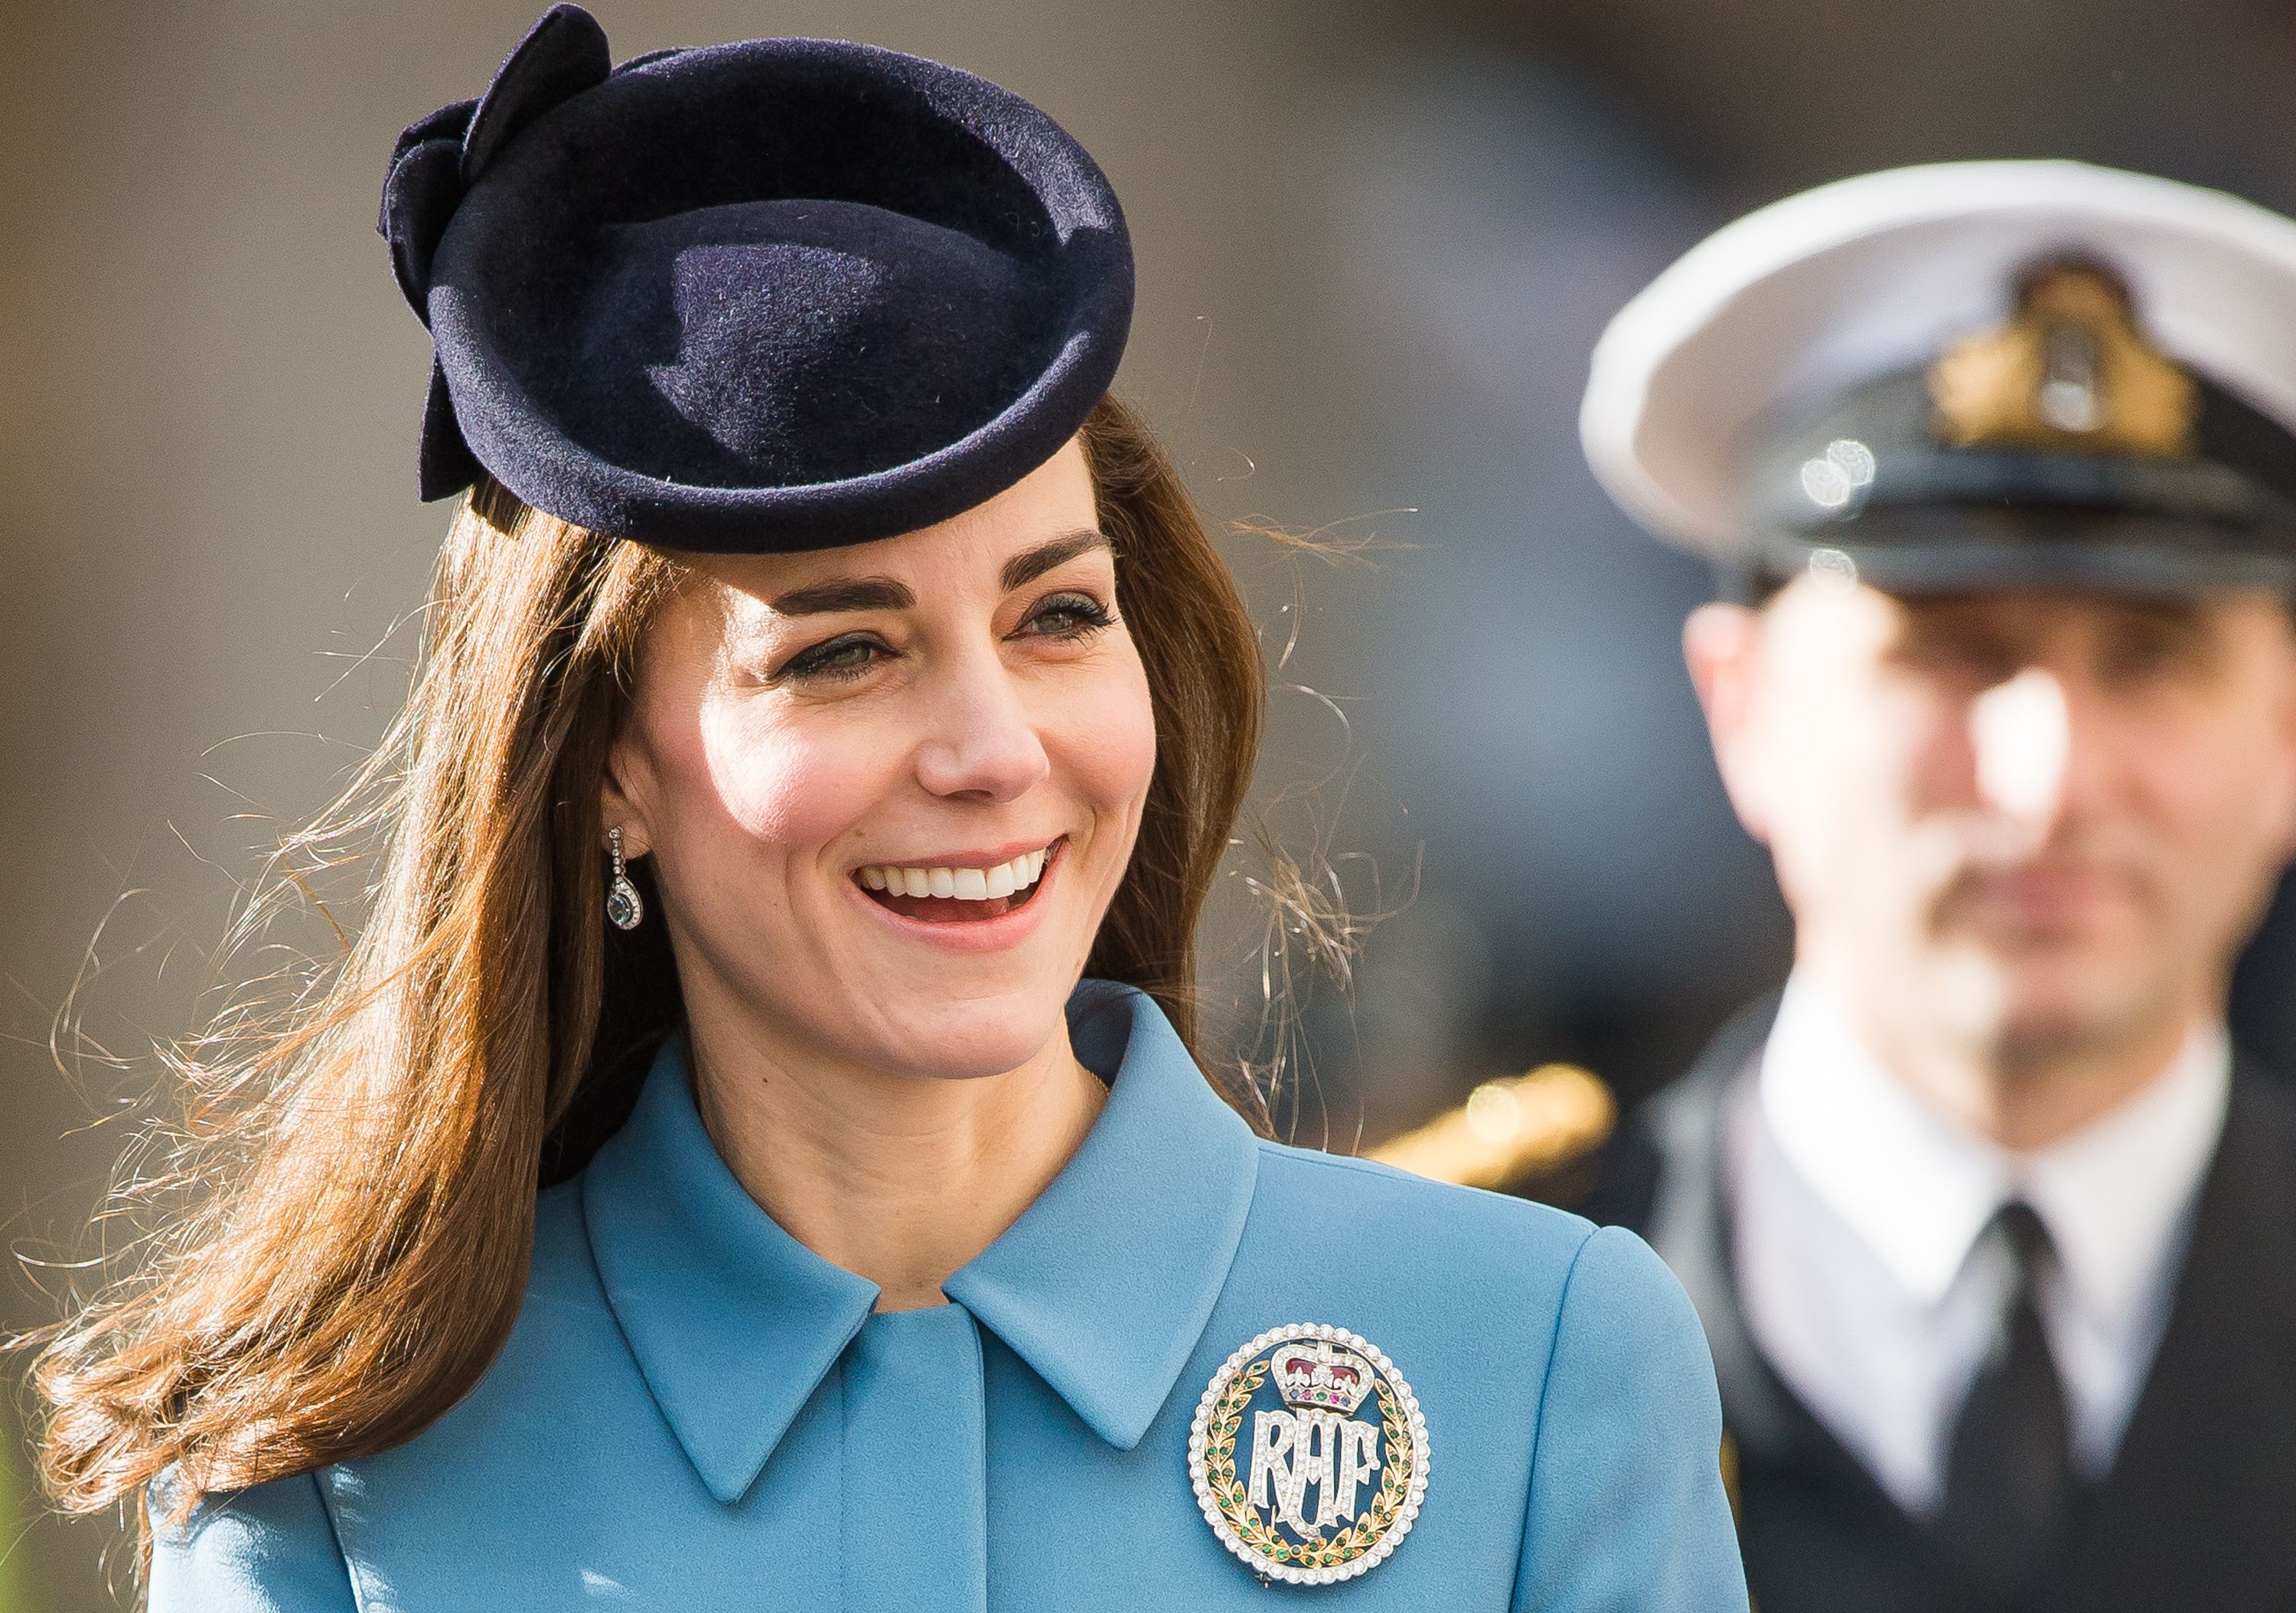 Pin on Kate Middleton Handbags